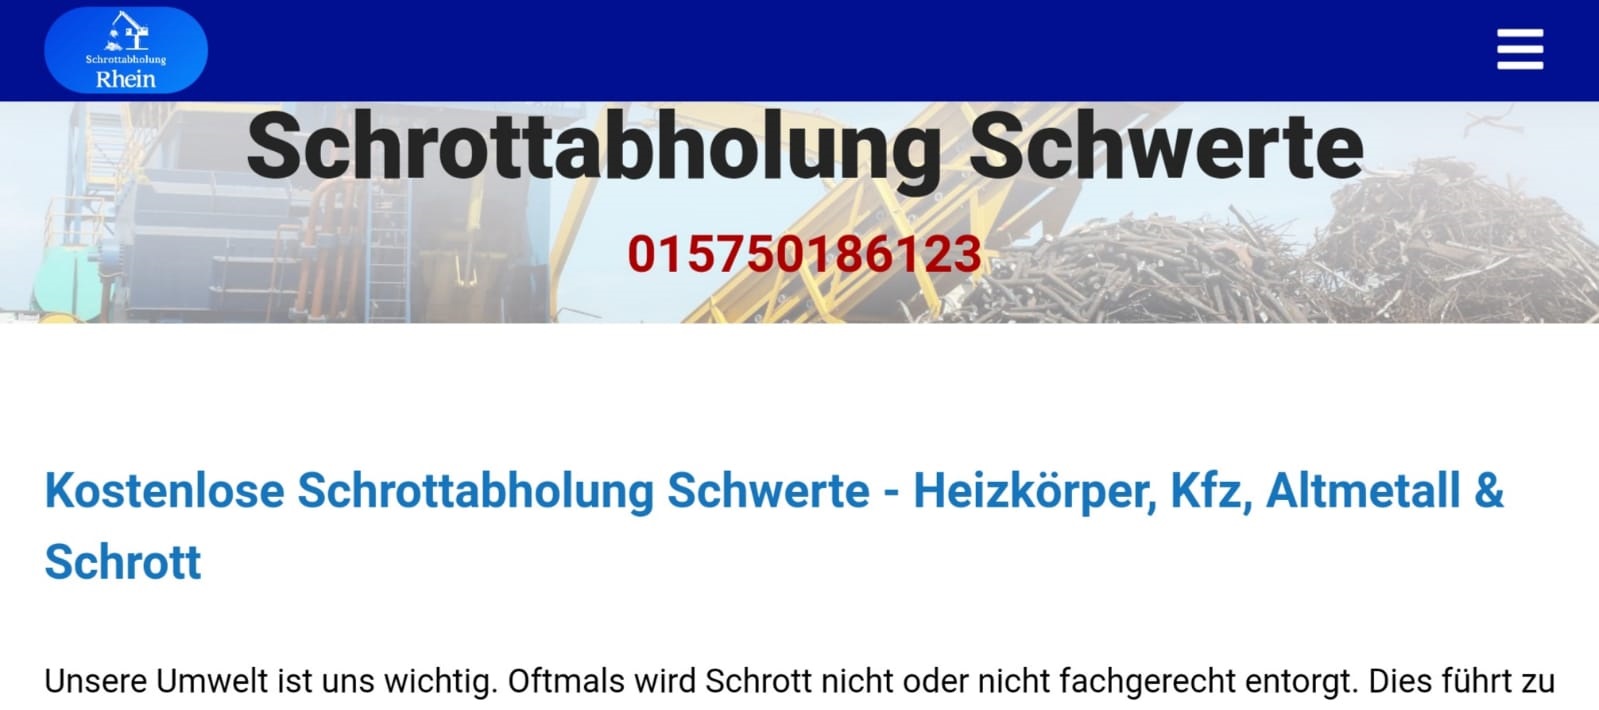 Schrottabholung Schwerte-9750ca74